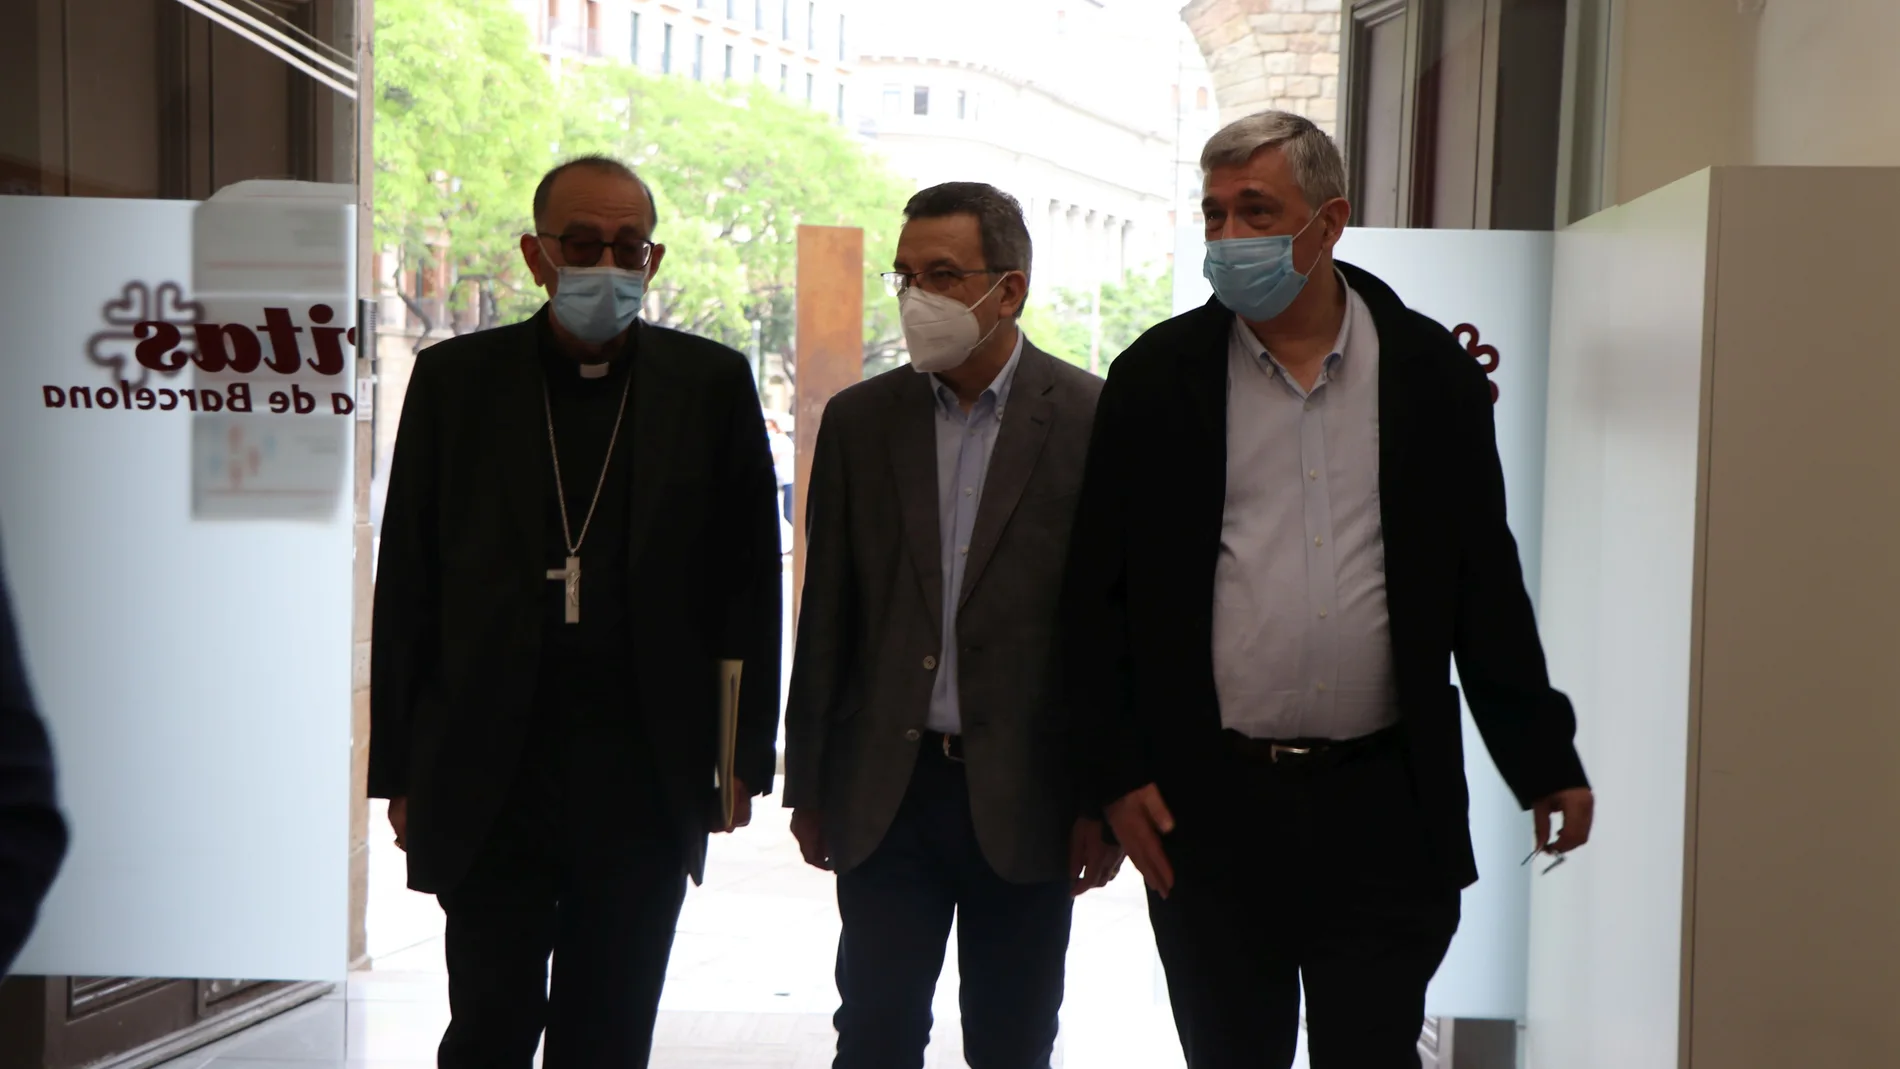 Salvador Busquets, director de Cáritas Barcelona, y Joan Josep Omella, cardenal arzobispo y presidente de Cáritas Barcelona, presentan la memoria de 2020